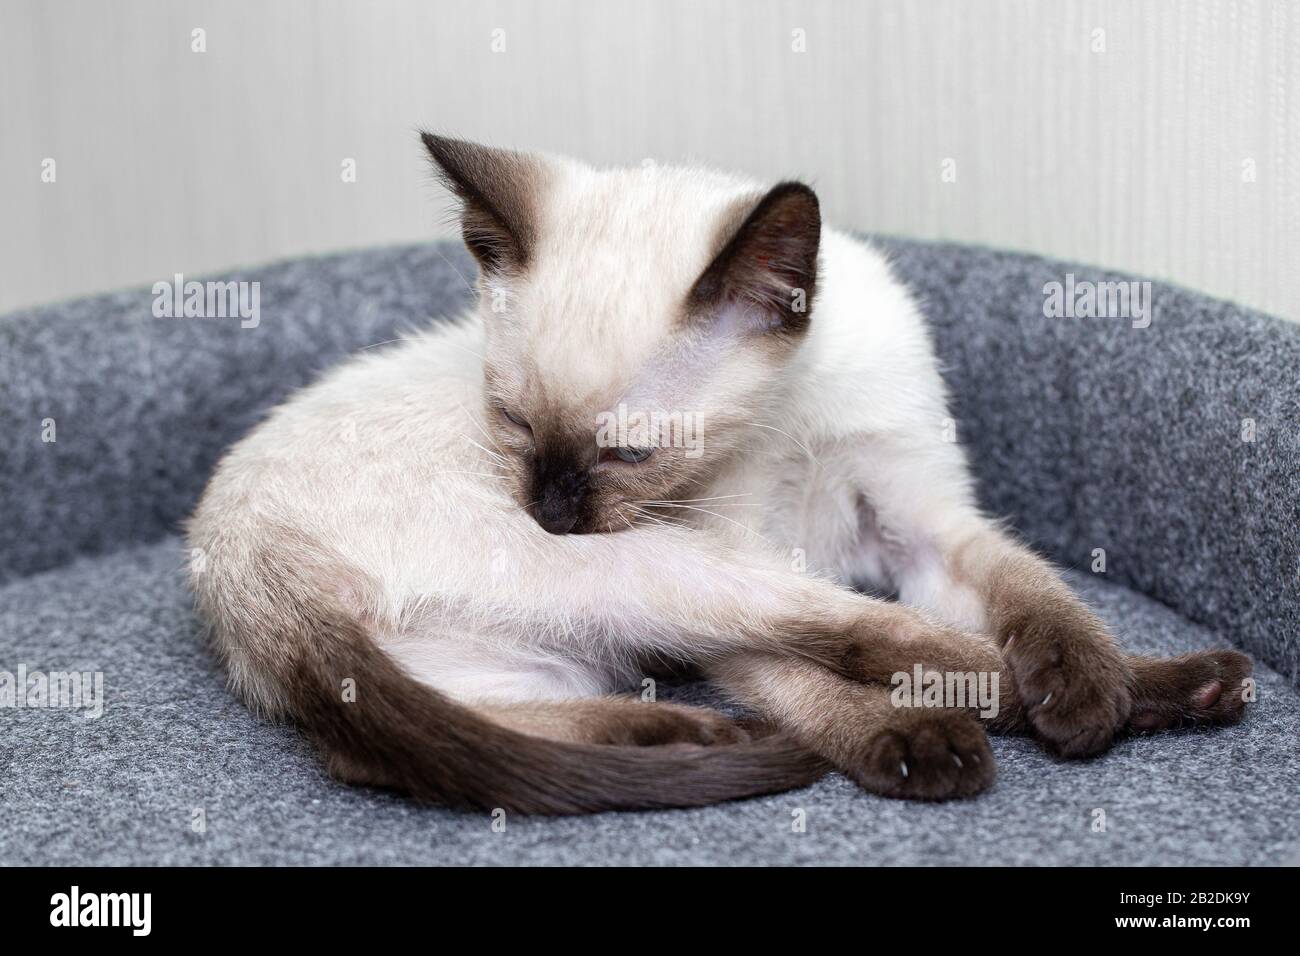 A little white Thai kitten licks his side Stock Photo